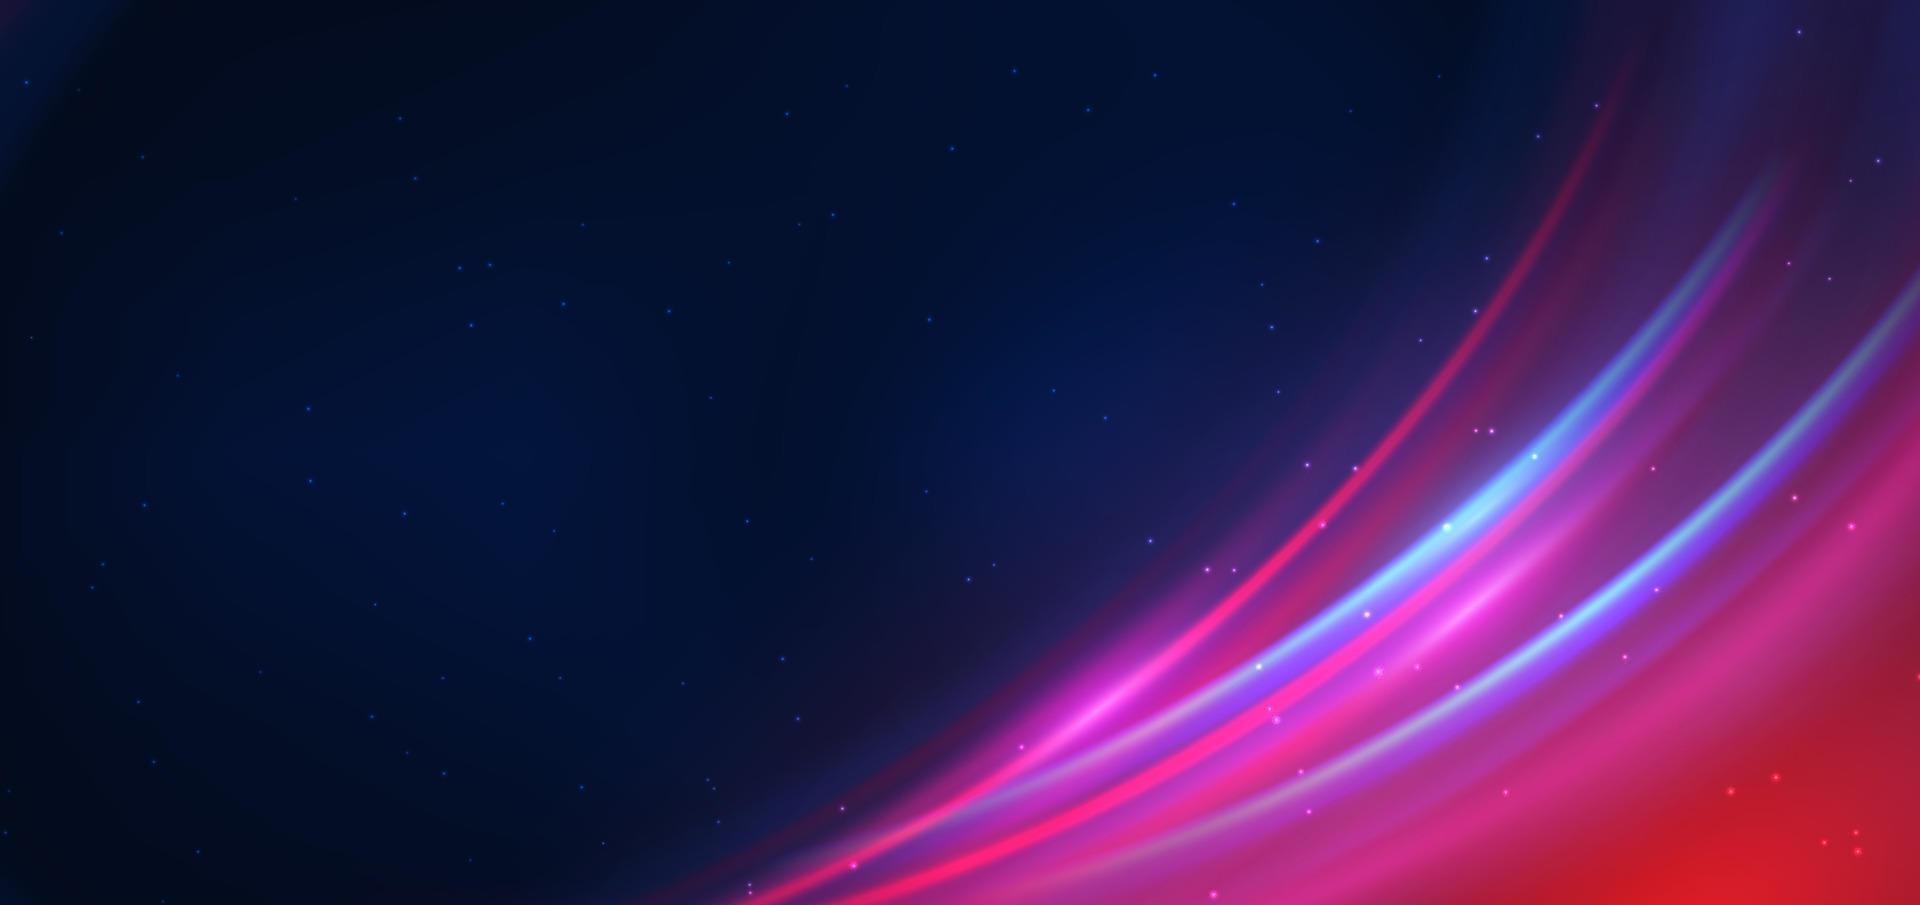 tecnología abstracta círculo de neón futurista líneas de luz azul y rosa brillantes con efecto de desenfoque de movimiento de velocidad sobre fondo azul oscuro. vector